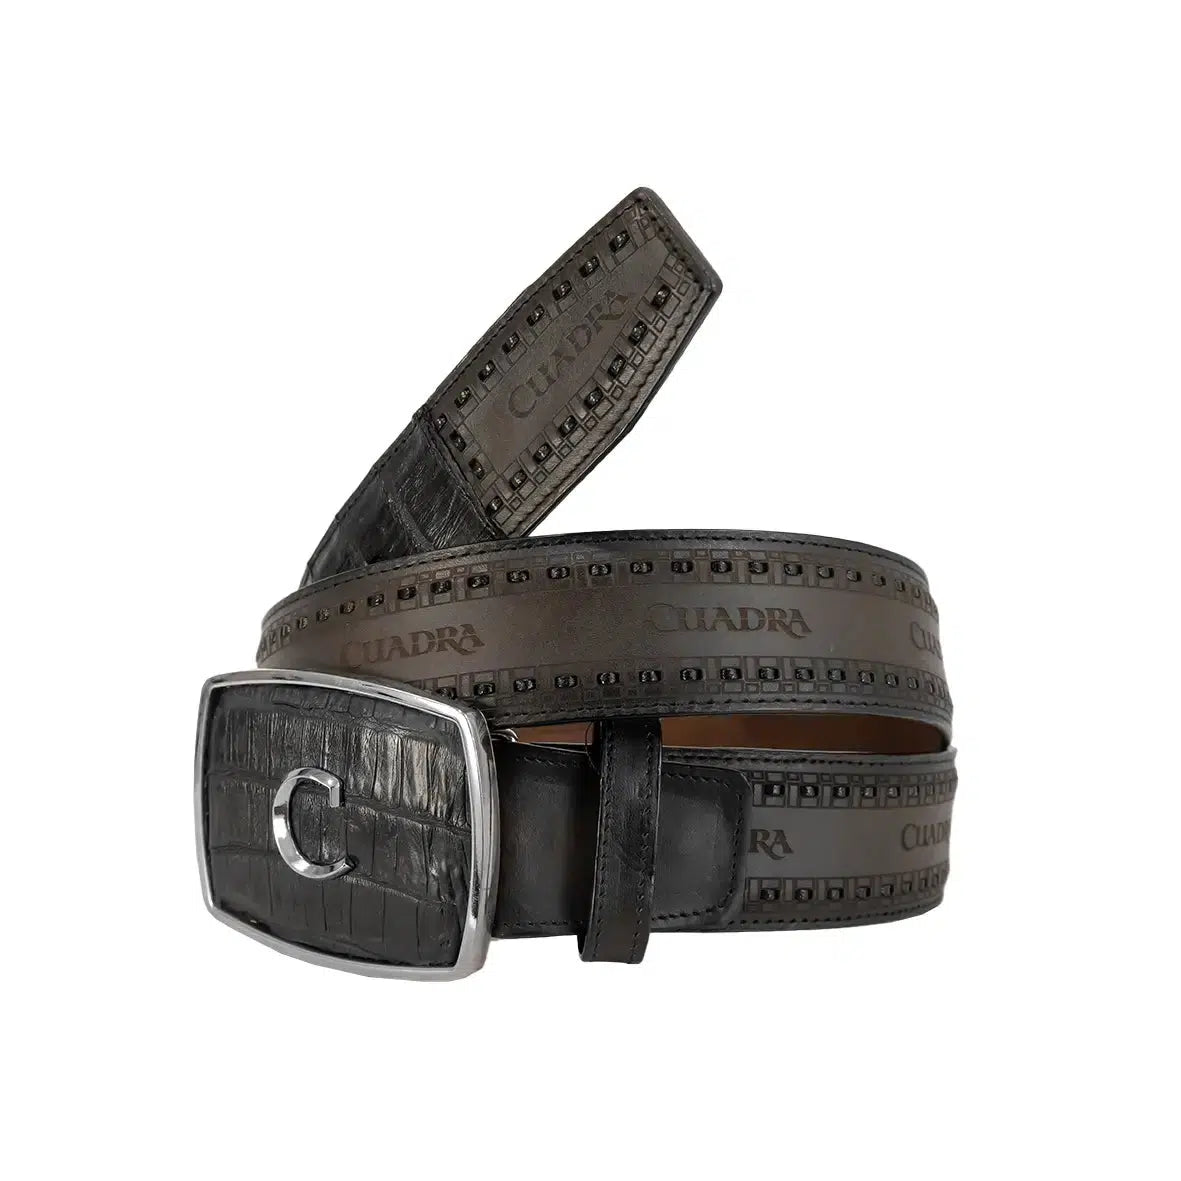 CV397FC - Cuadra black cowboy western fuscus leather belt for men.